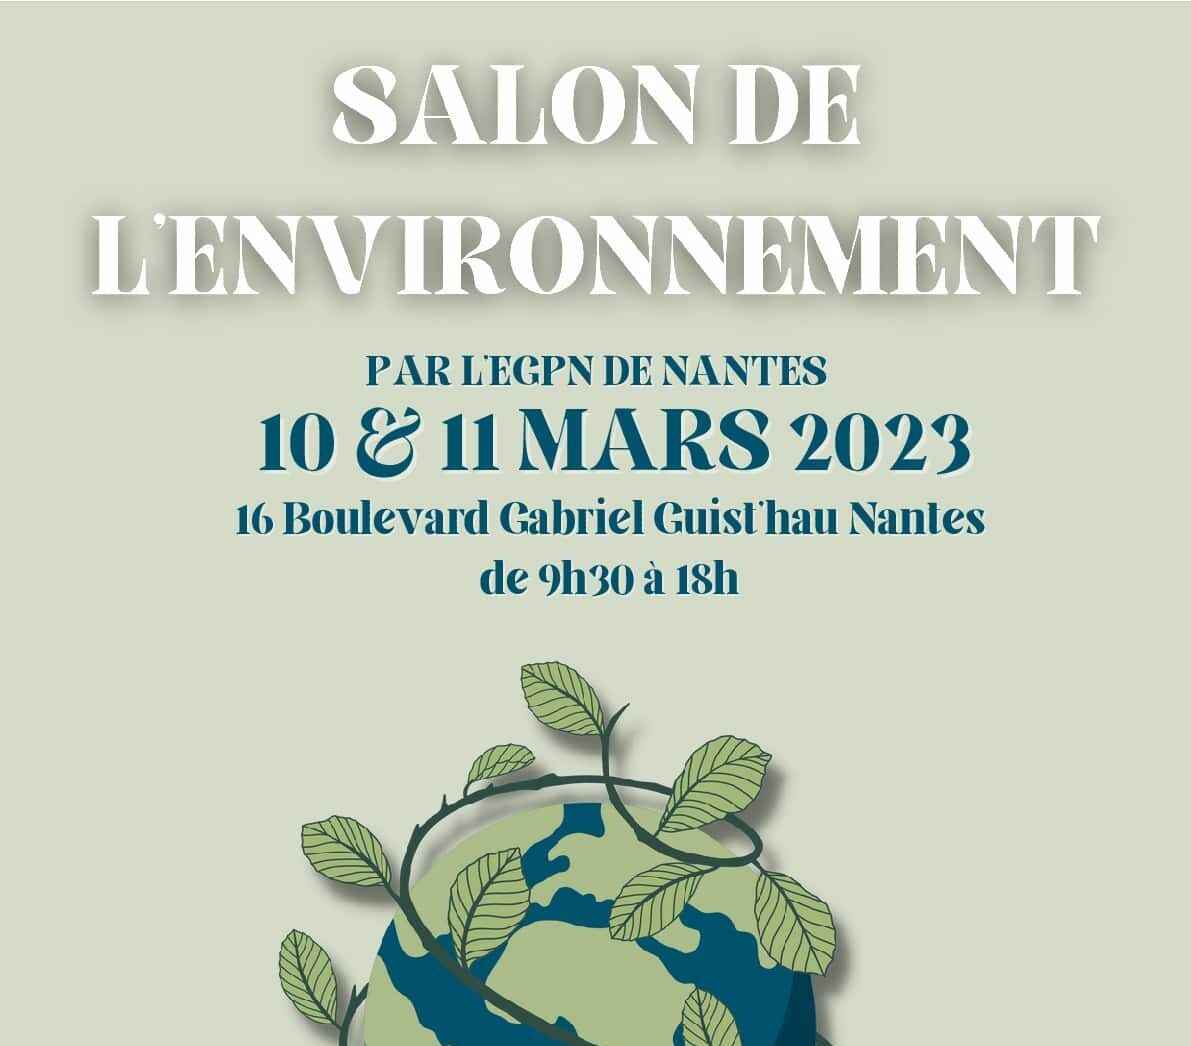 Salon de l'environnement du 10 et 11 mars 2023